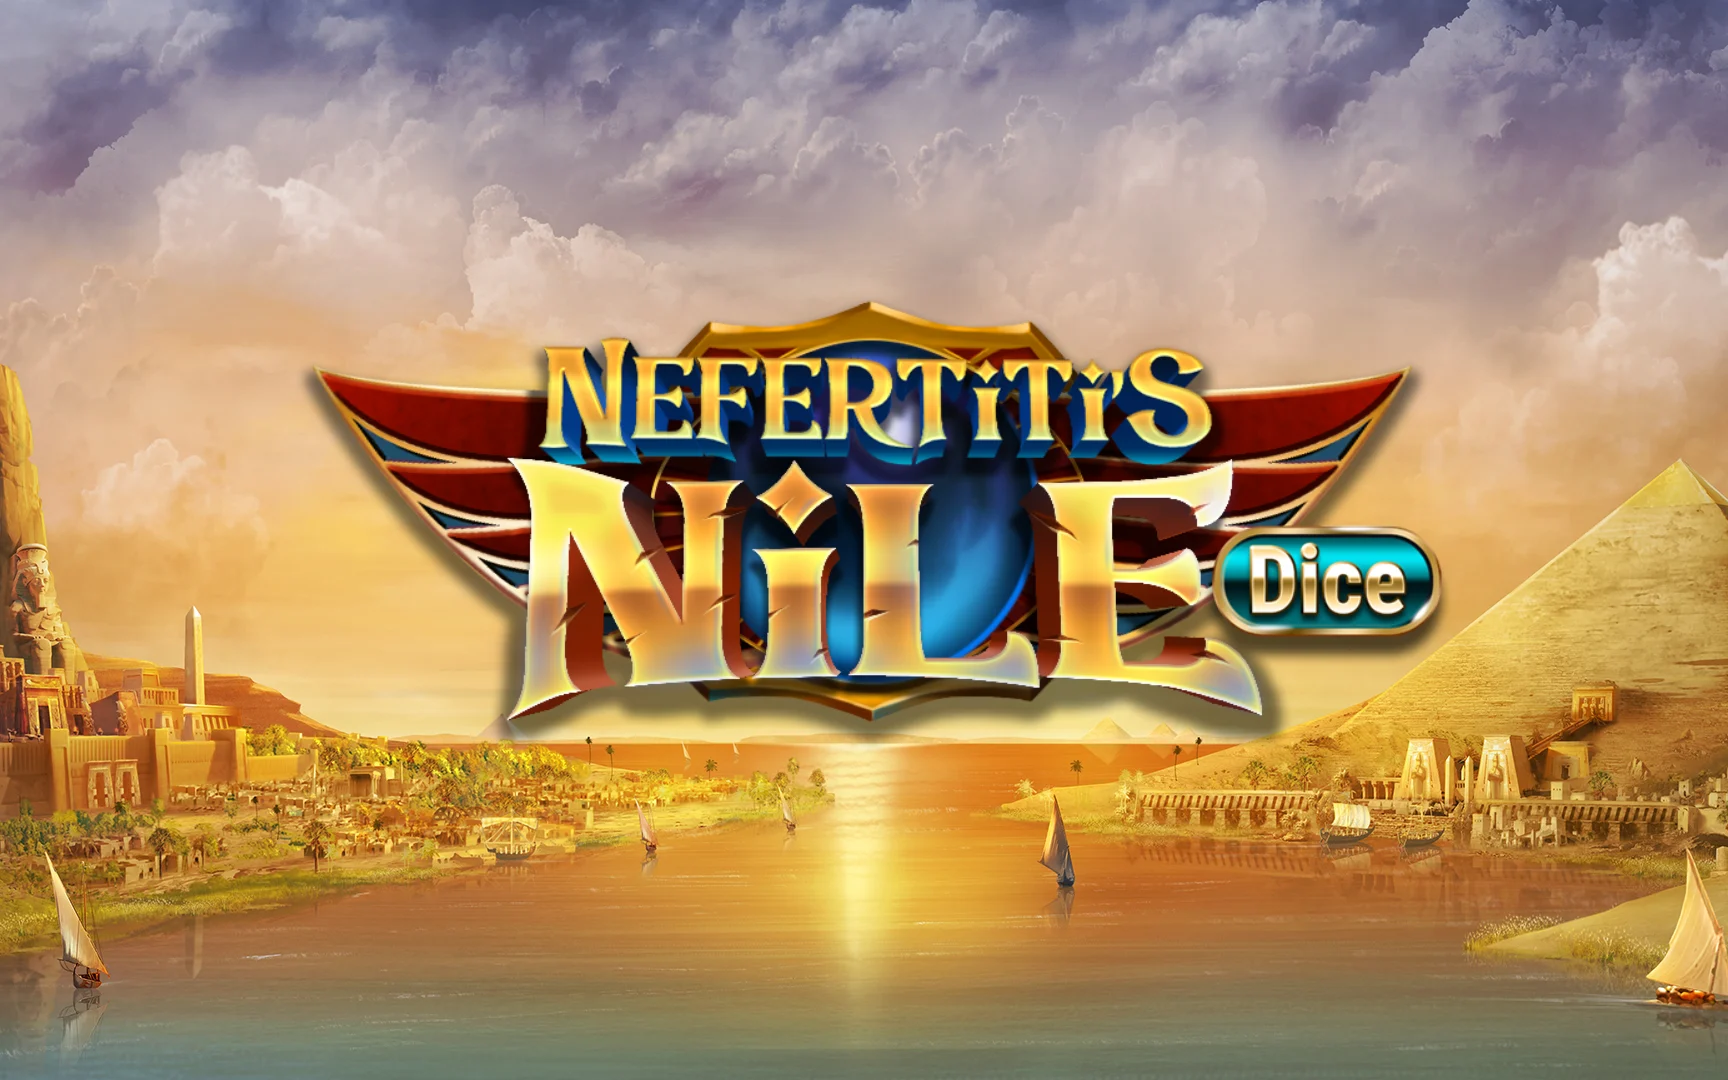 Joacă Nefertiti's Nile Dice în cazinoul online Starcasino.be